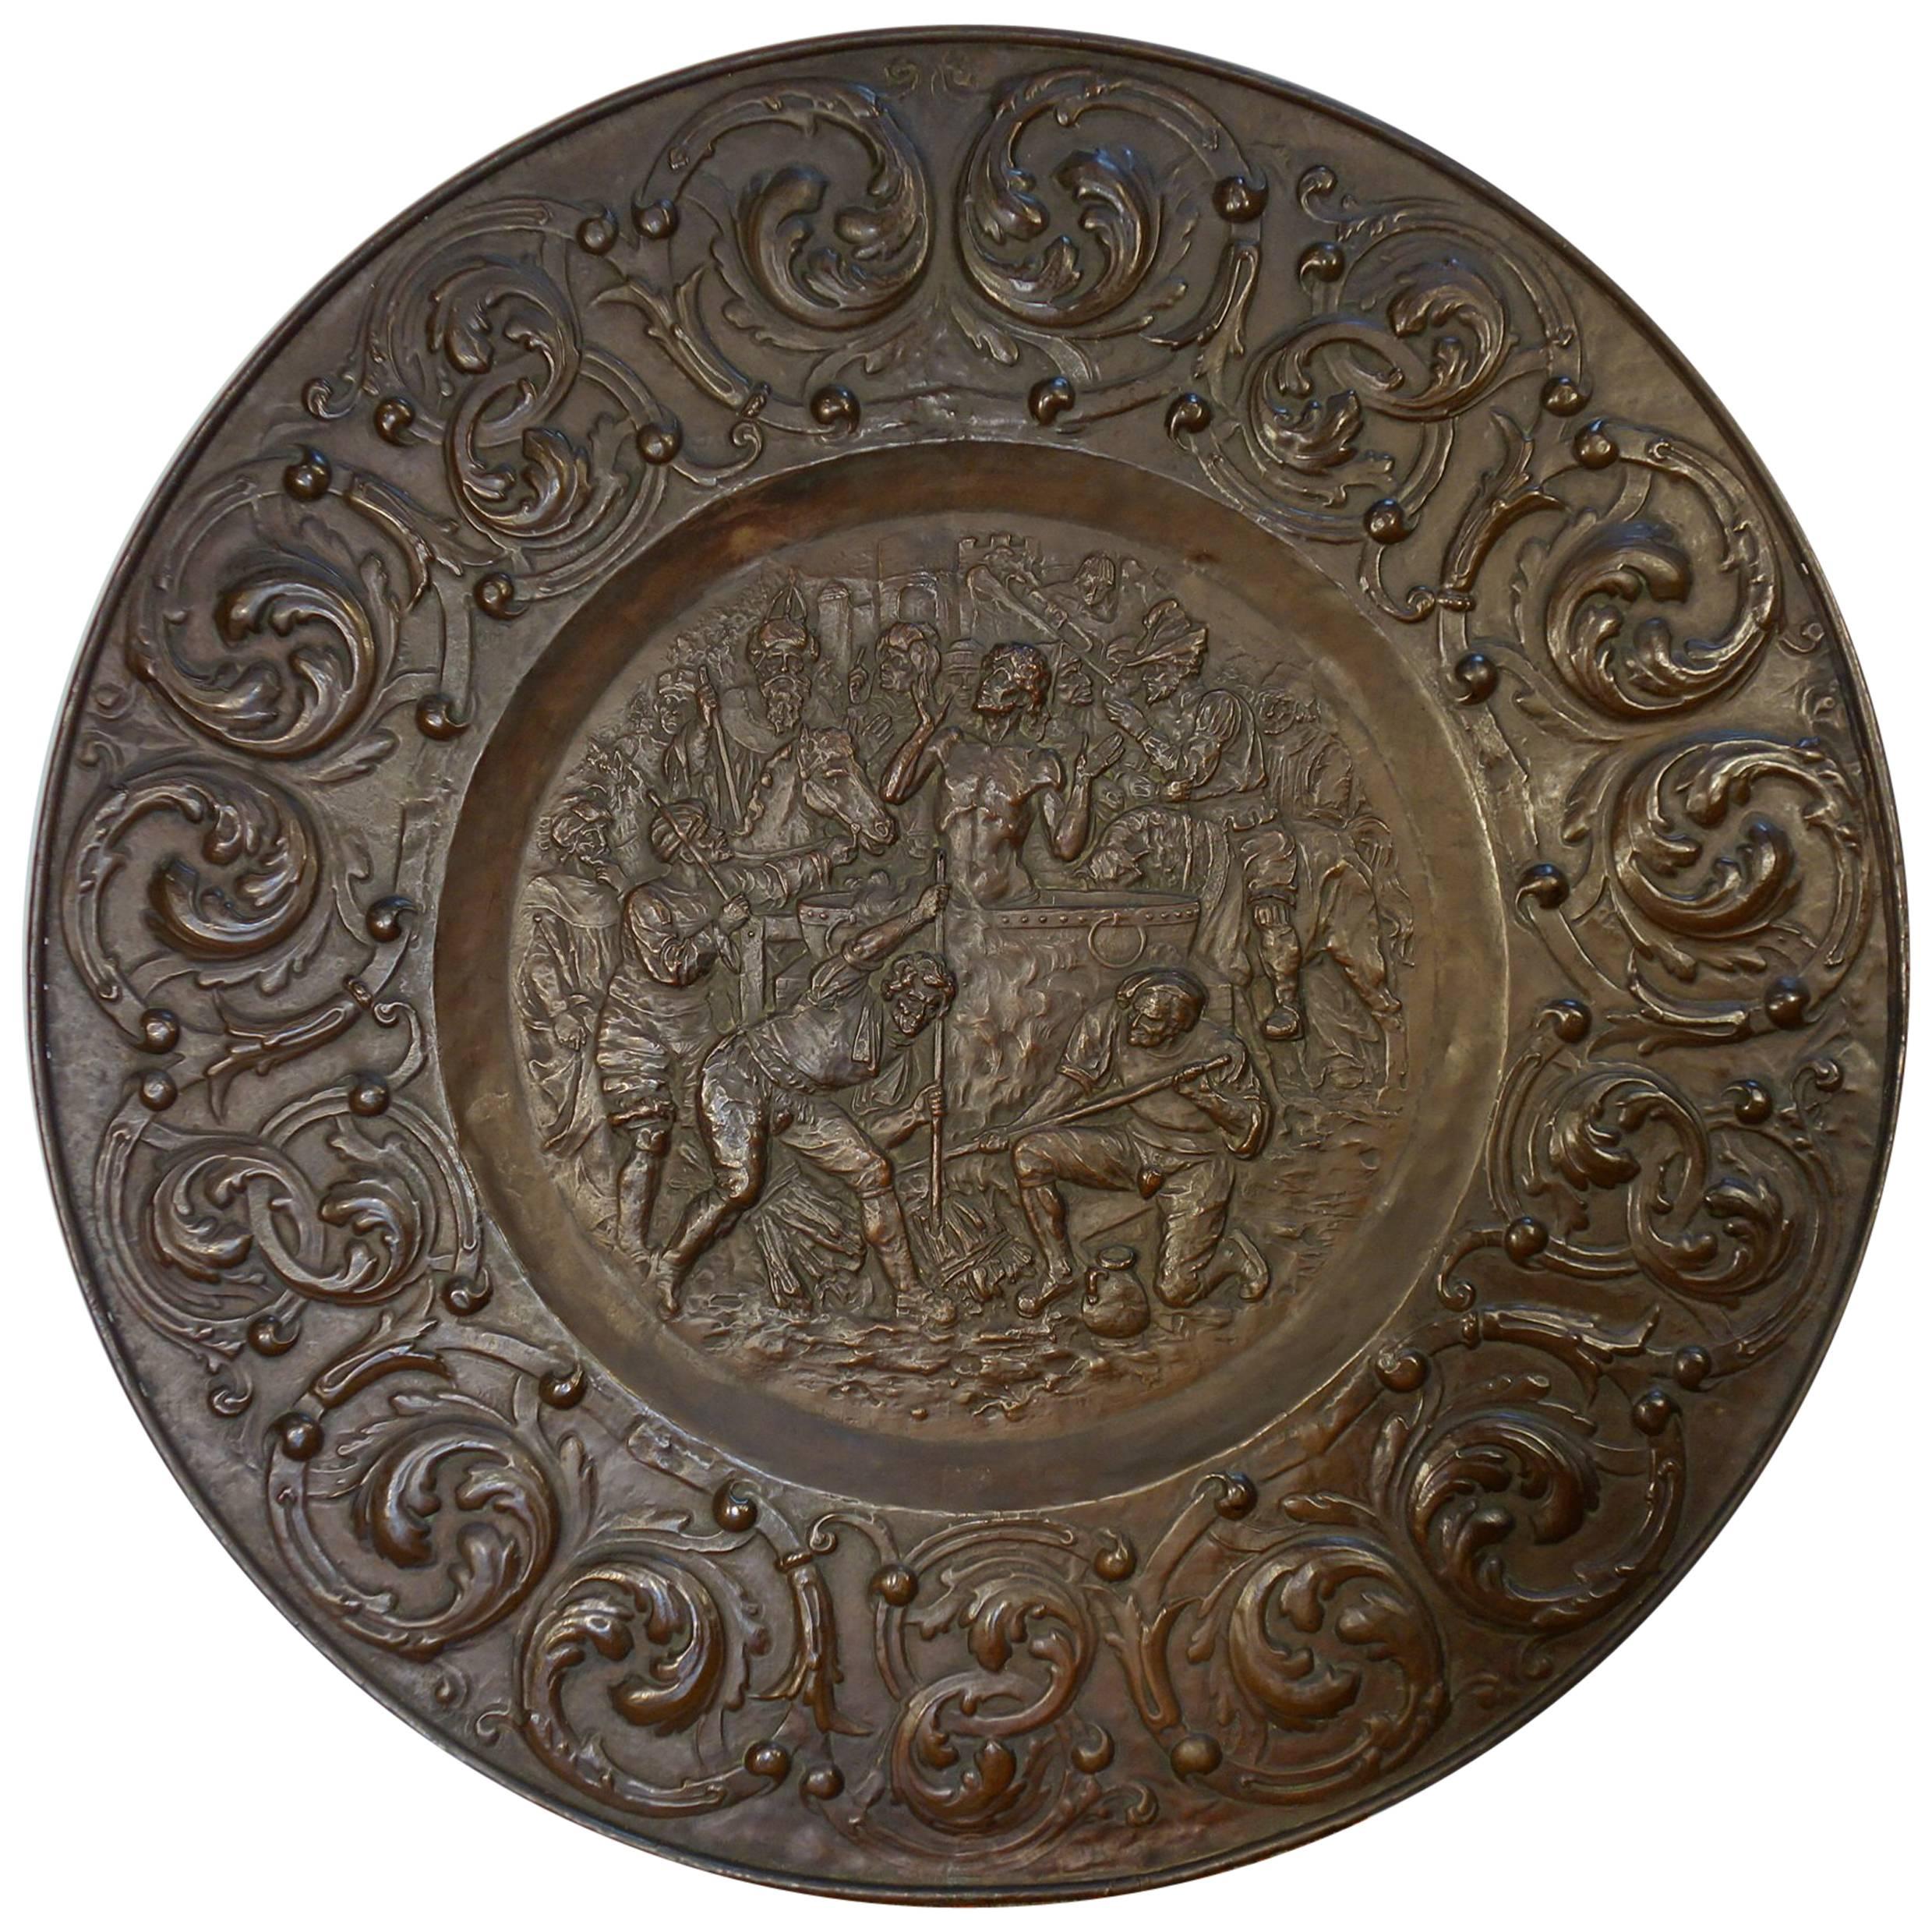 Antique Italian Large Embossed Copper Roman Plate Circa 1820